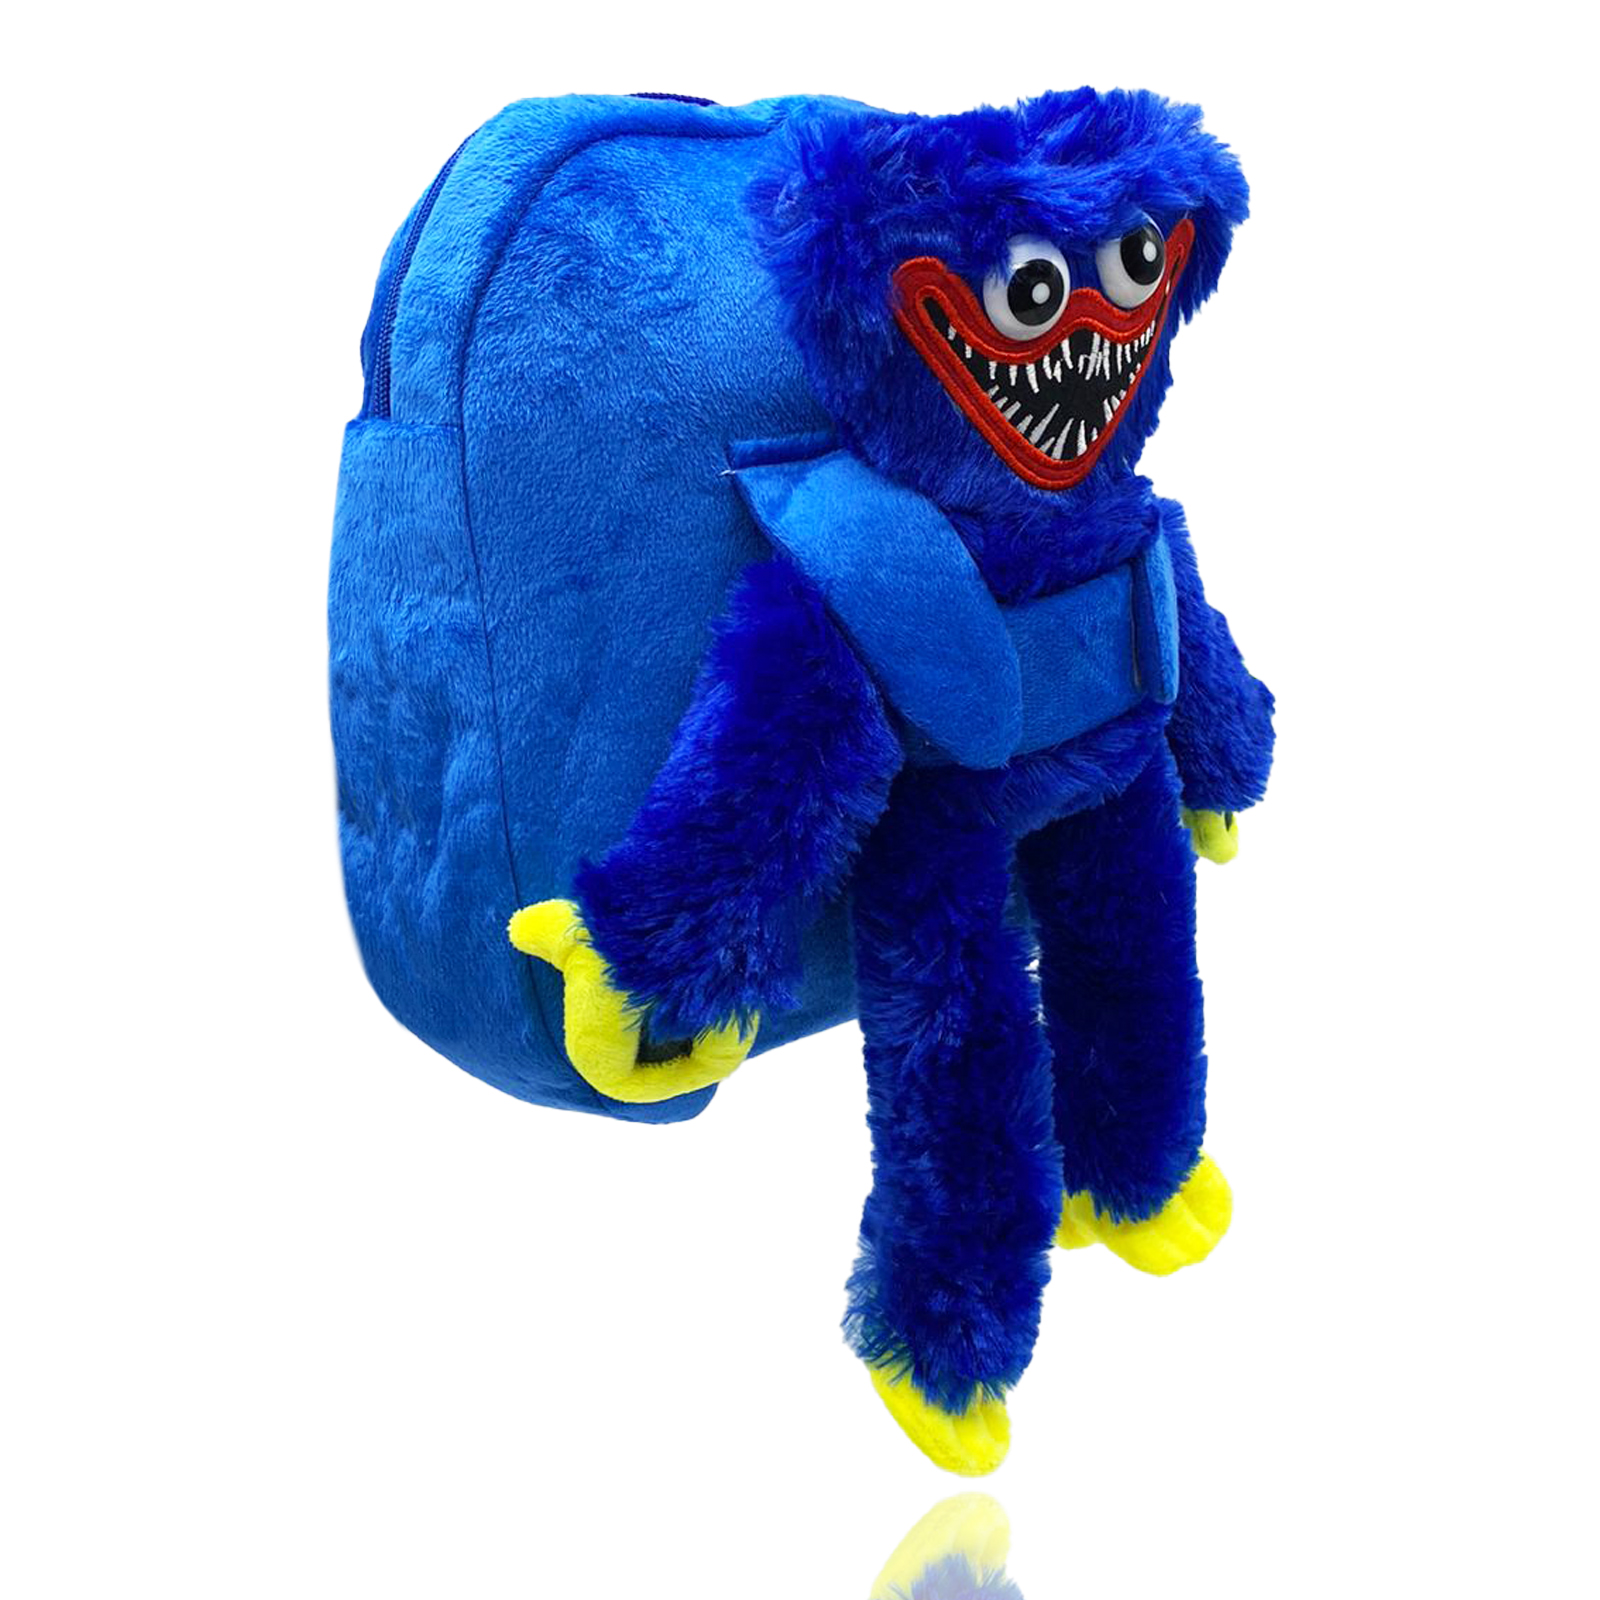 фото Рюкзак nano shop хаги ваги киси миси с мягкой игрушкой, синий